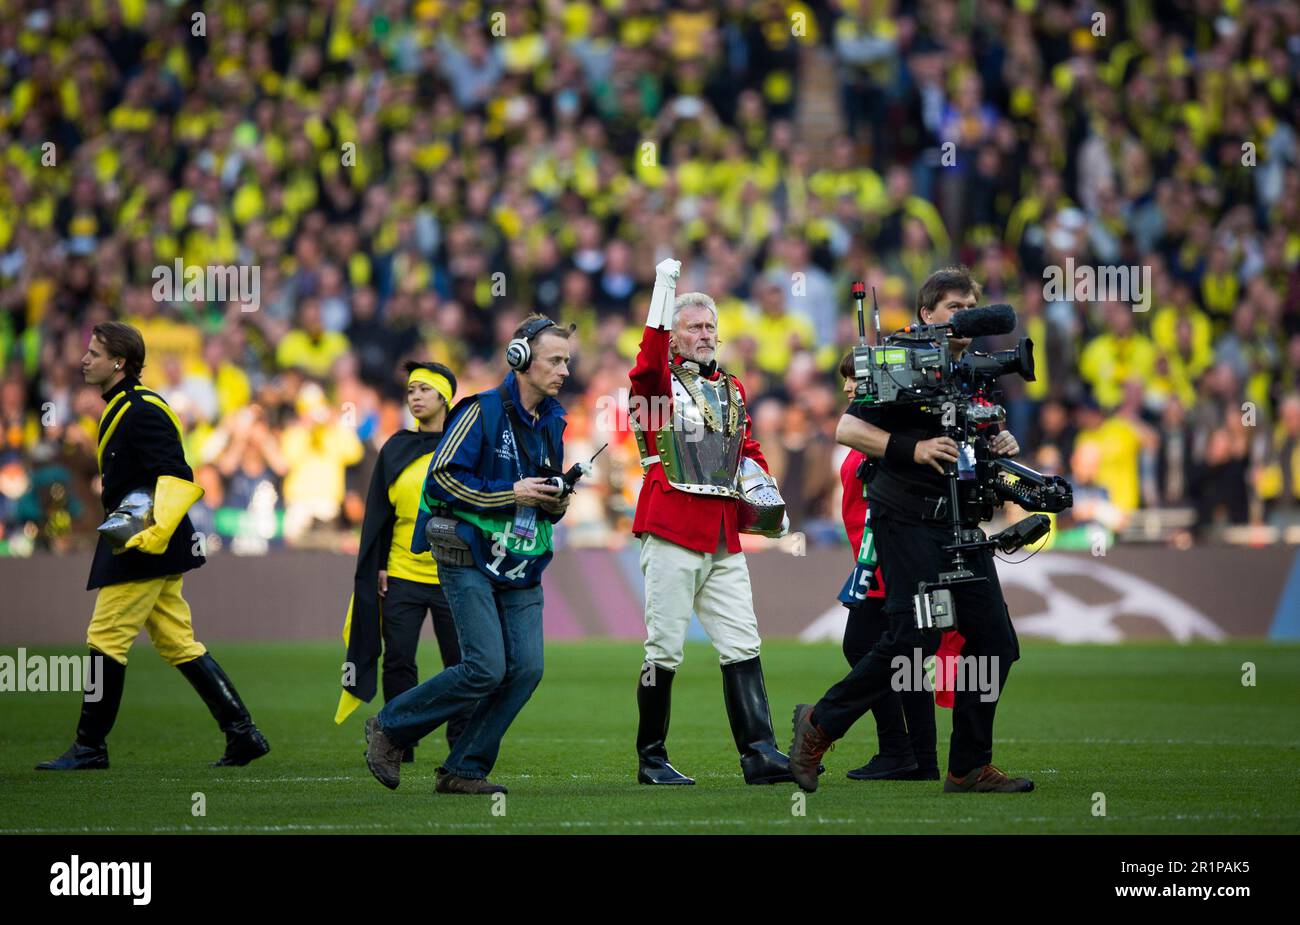 London, 25.05.2013, Wembley Paul Breitner in Ritterrüstung  -  im Hintergrund Lars Ricken  Borussia Dortmund - FC Bayern München Champions League Fina Stock Photo